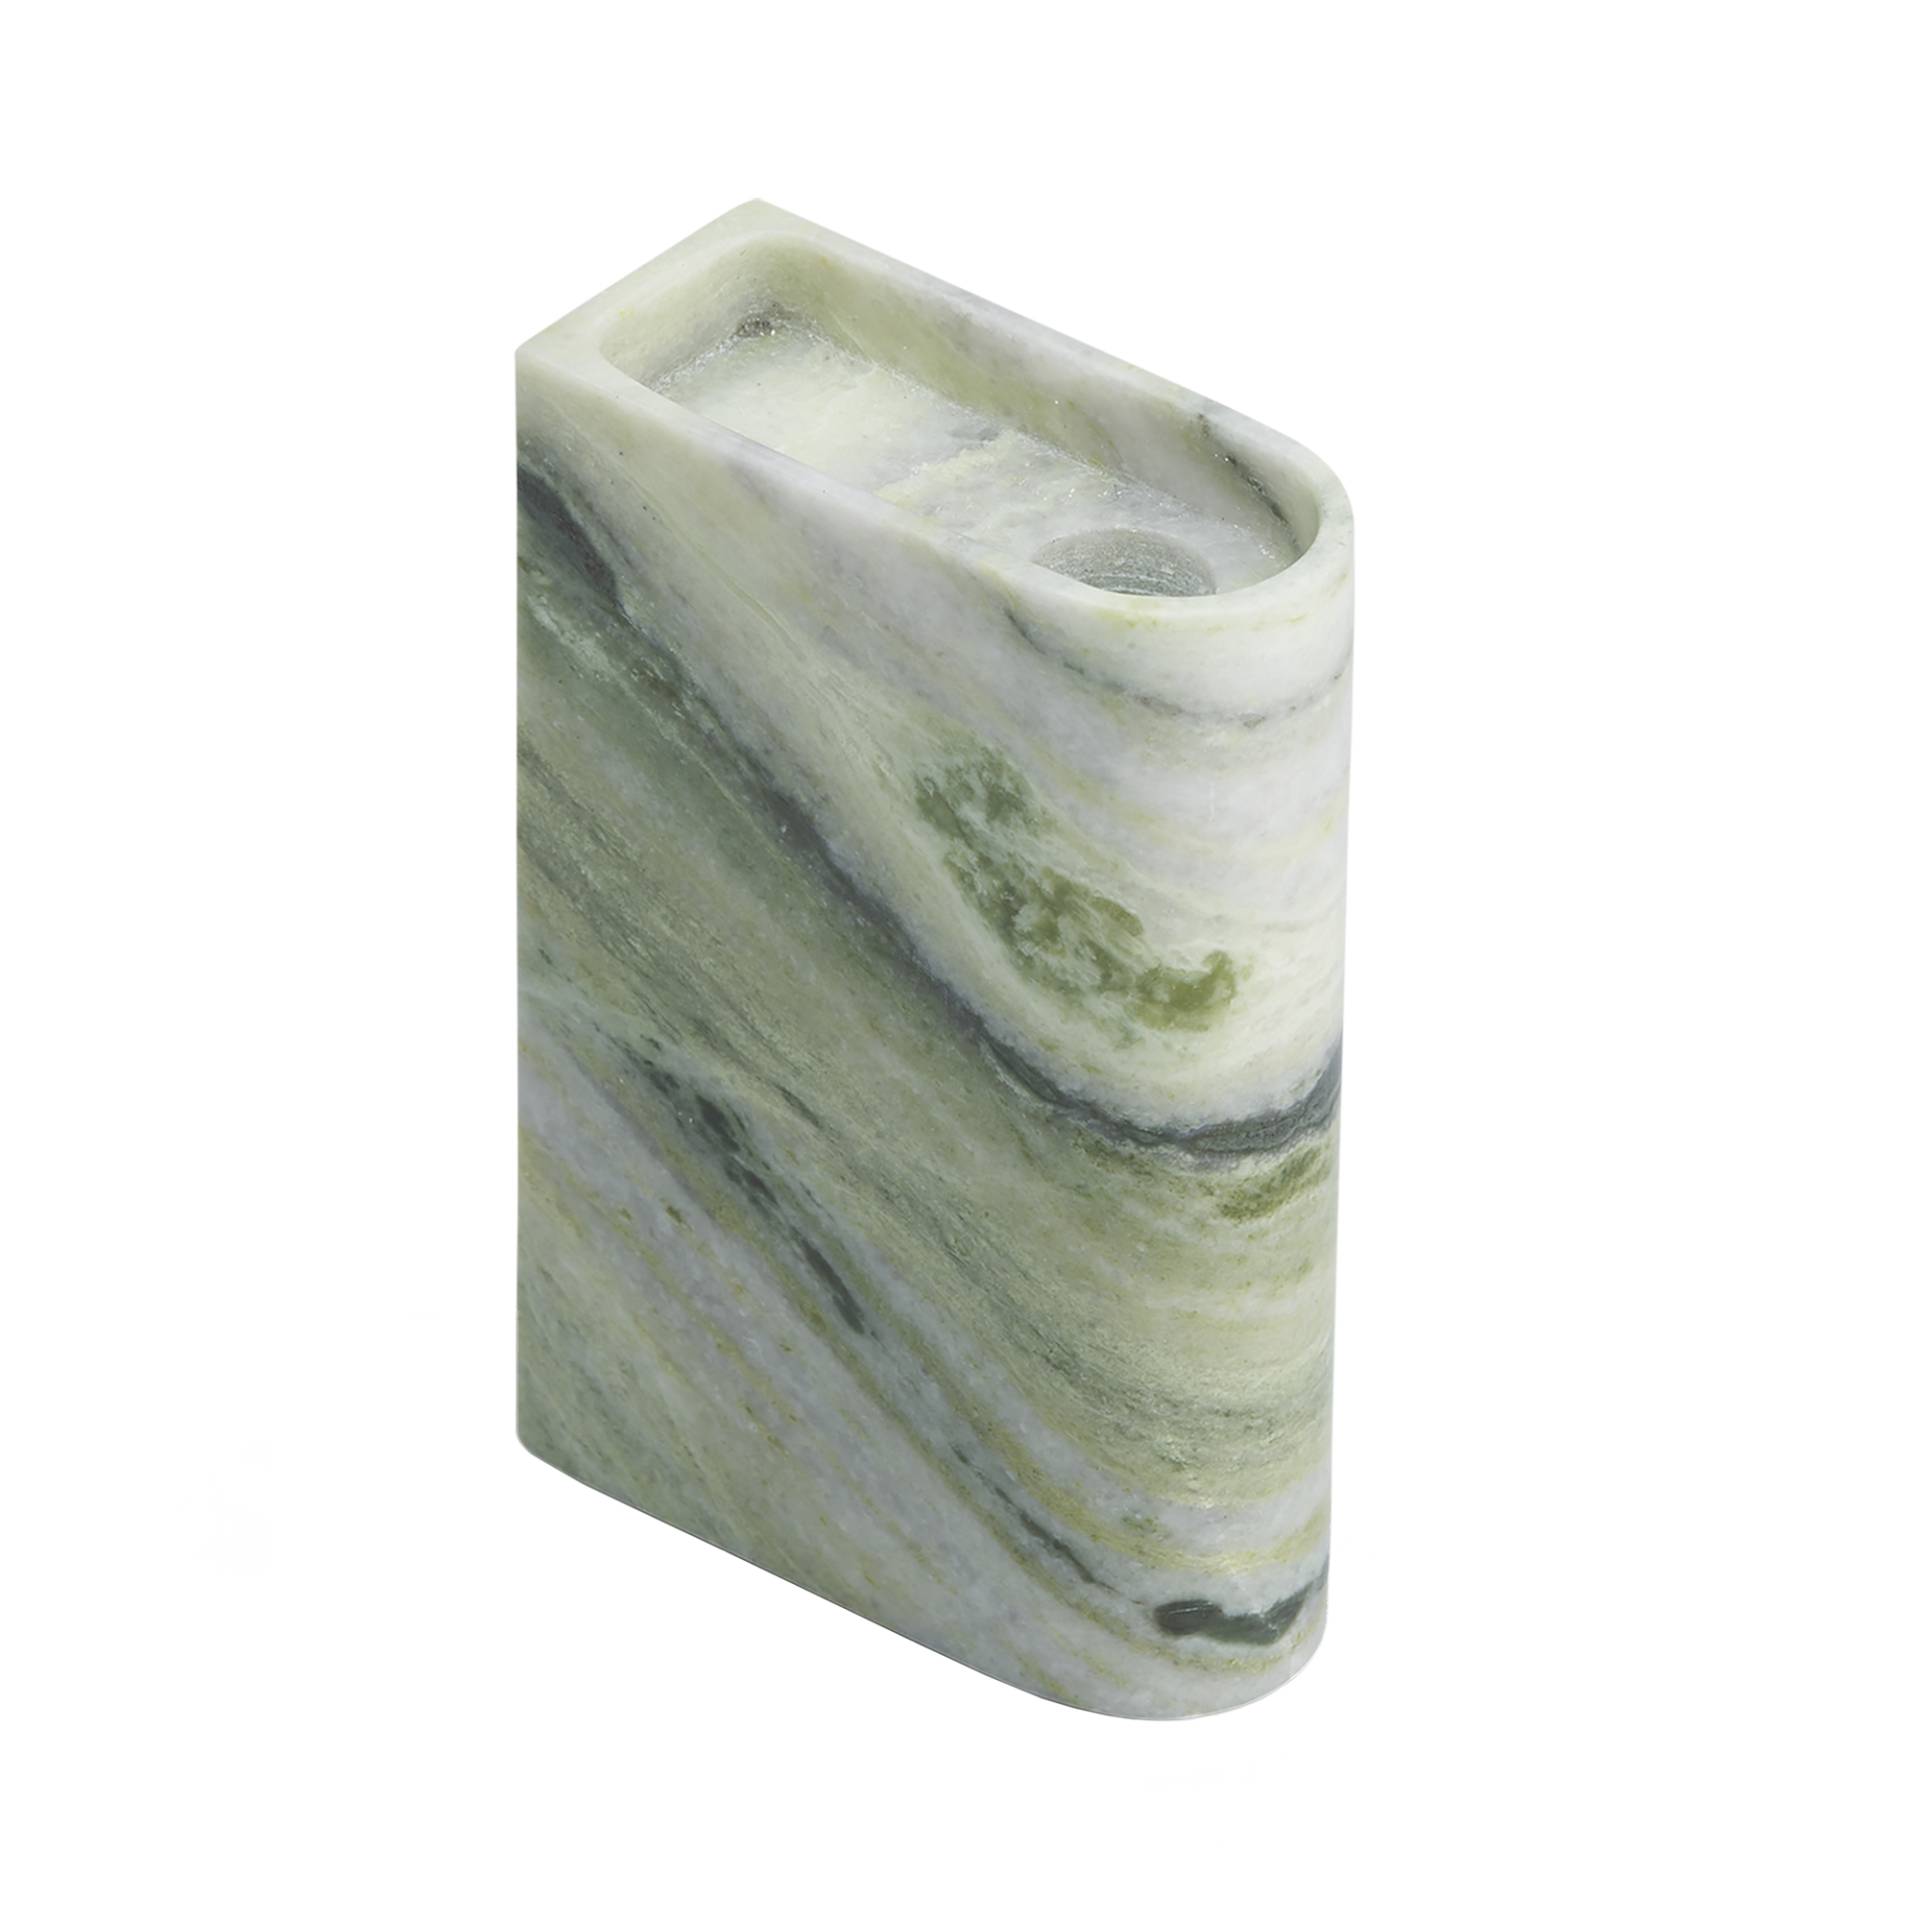 Northern - Monolith Kerzenhalter mittel - gemischtes grün/Verde Prato Marmor/BxHxT 4x13x9cm/jedes Stück ein Unikat von Northern